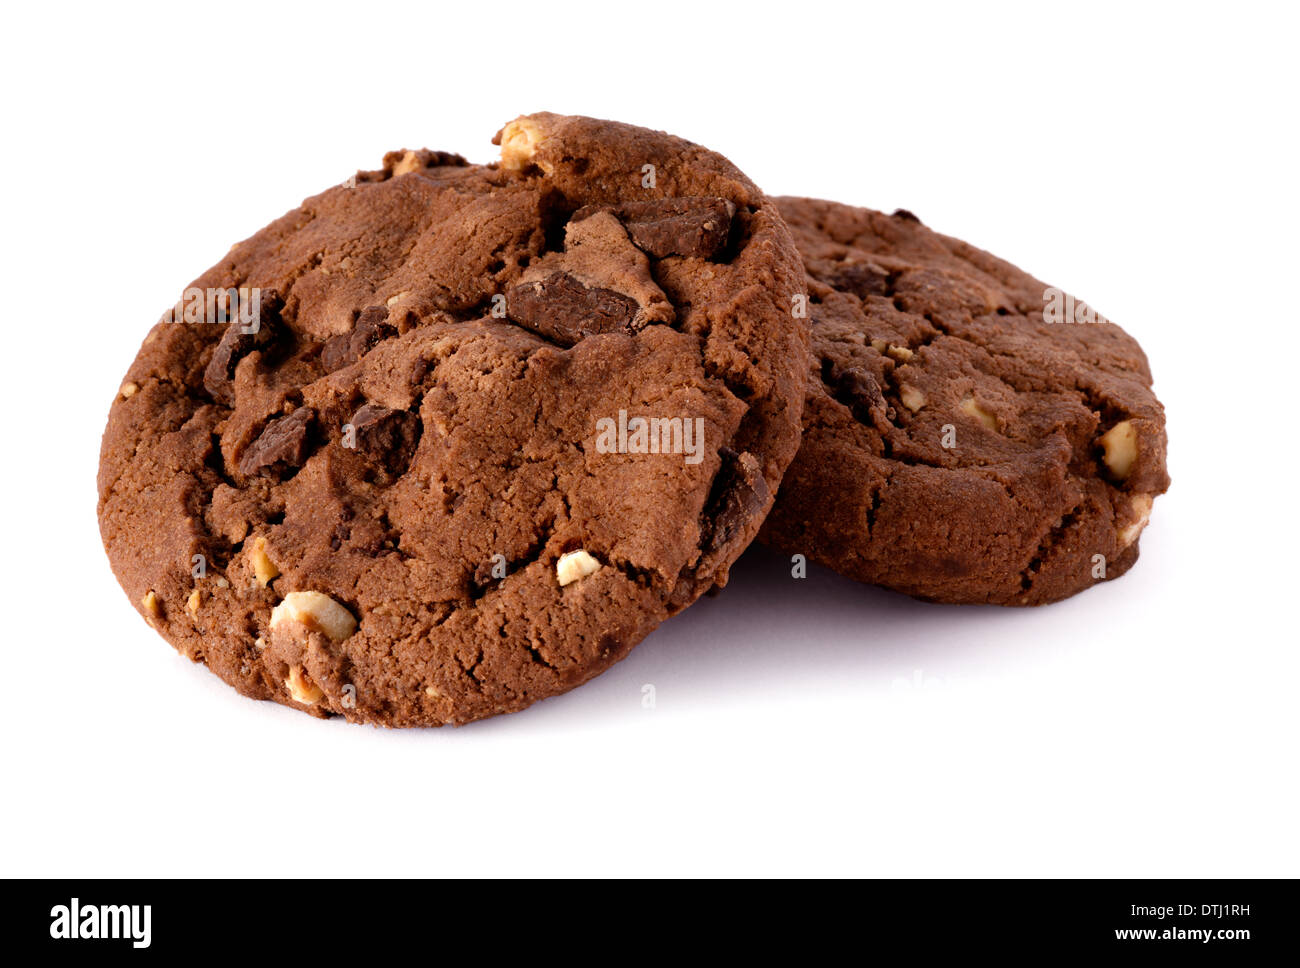 L'alimentation : les cookies au chocolat maison fraîche sur fond blanc Banque D'Images